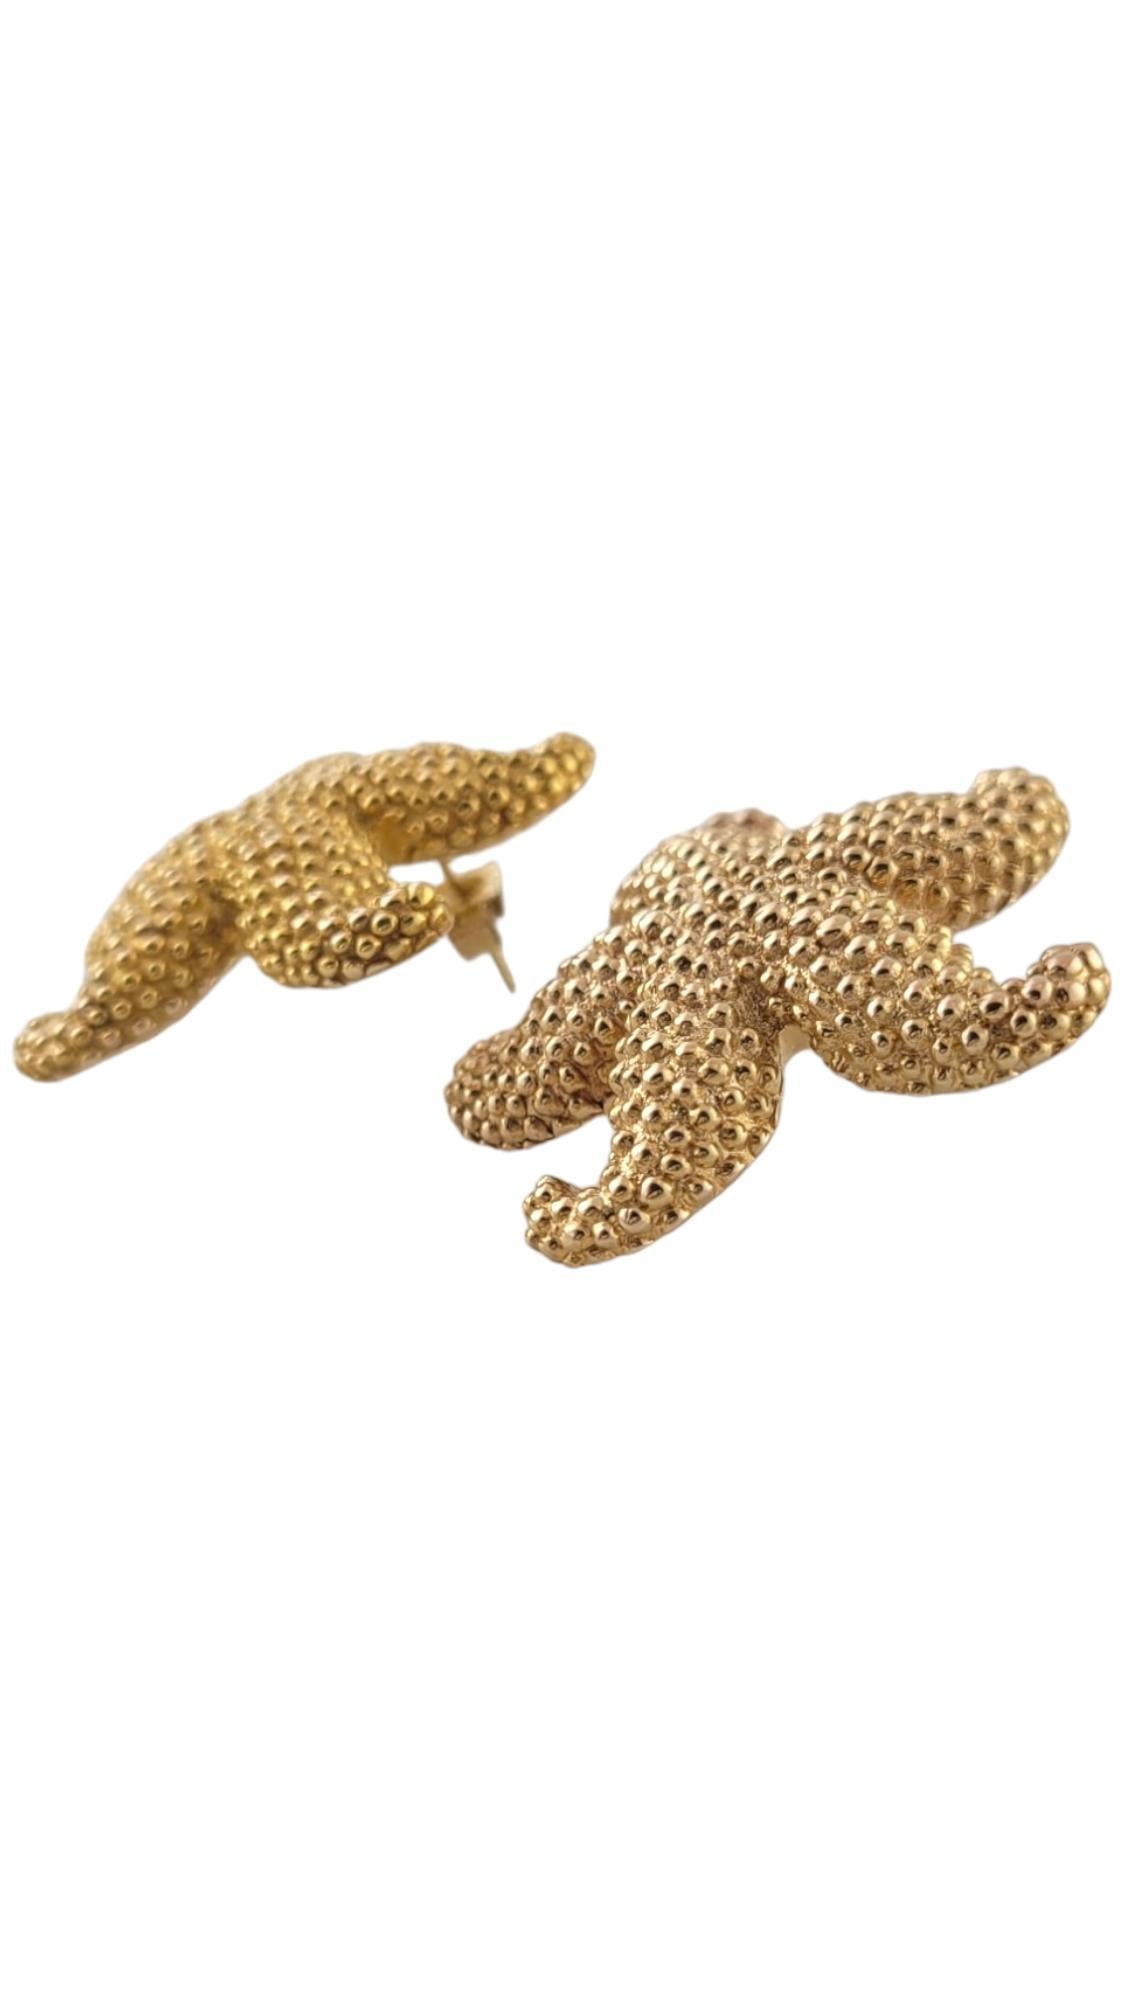 Boucles d'oreilles en or jaune 14K en forme de poisson étoilé

Ces magnifiques boucles d'oreilles en forme d'étoile de mer sont méticuleusement fabriquées en or jaune 14K !

Taille : 29.6mm X 31.4mm X 5.3mm

Poids : 2,9 dwt/ 4,4 g

Poinçon :